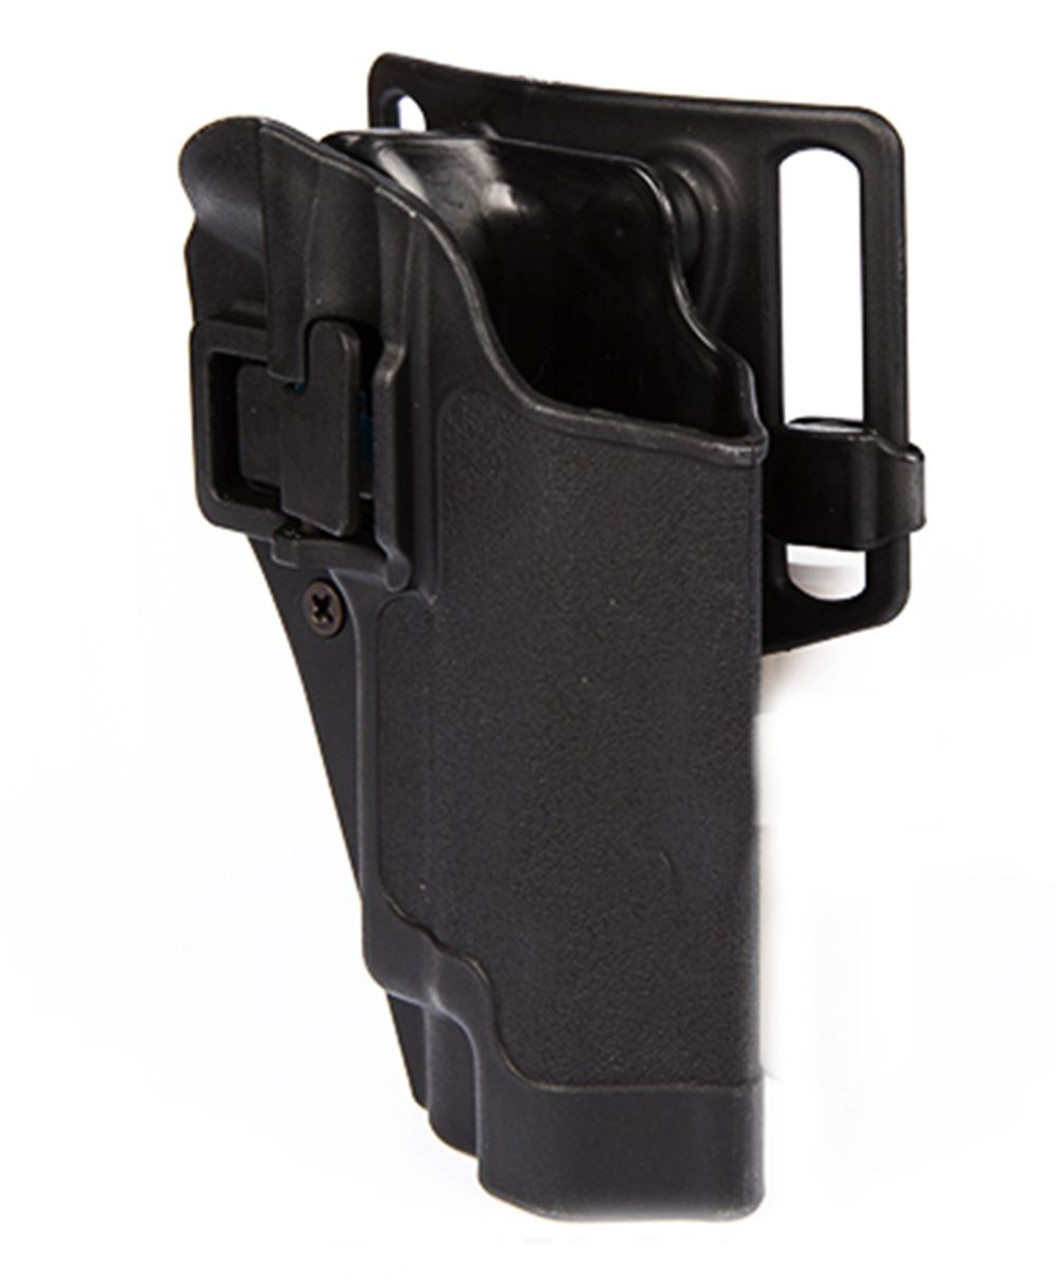 Cqc Serpa Pistol Belt Hard Holster For Sig P220 P226 Black Uk